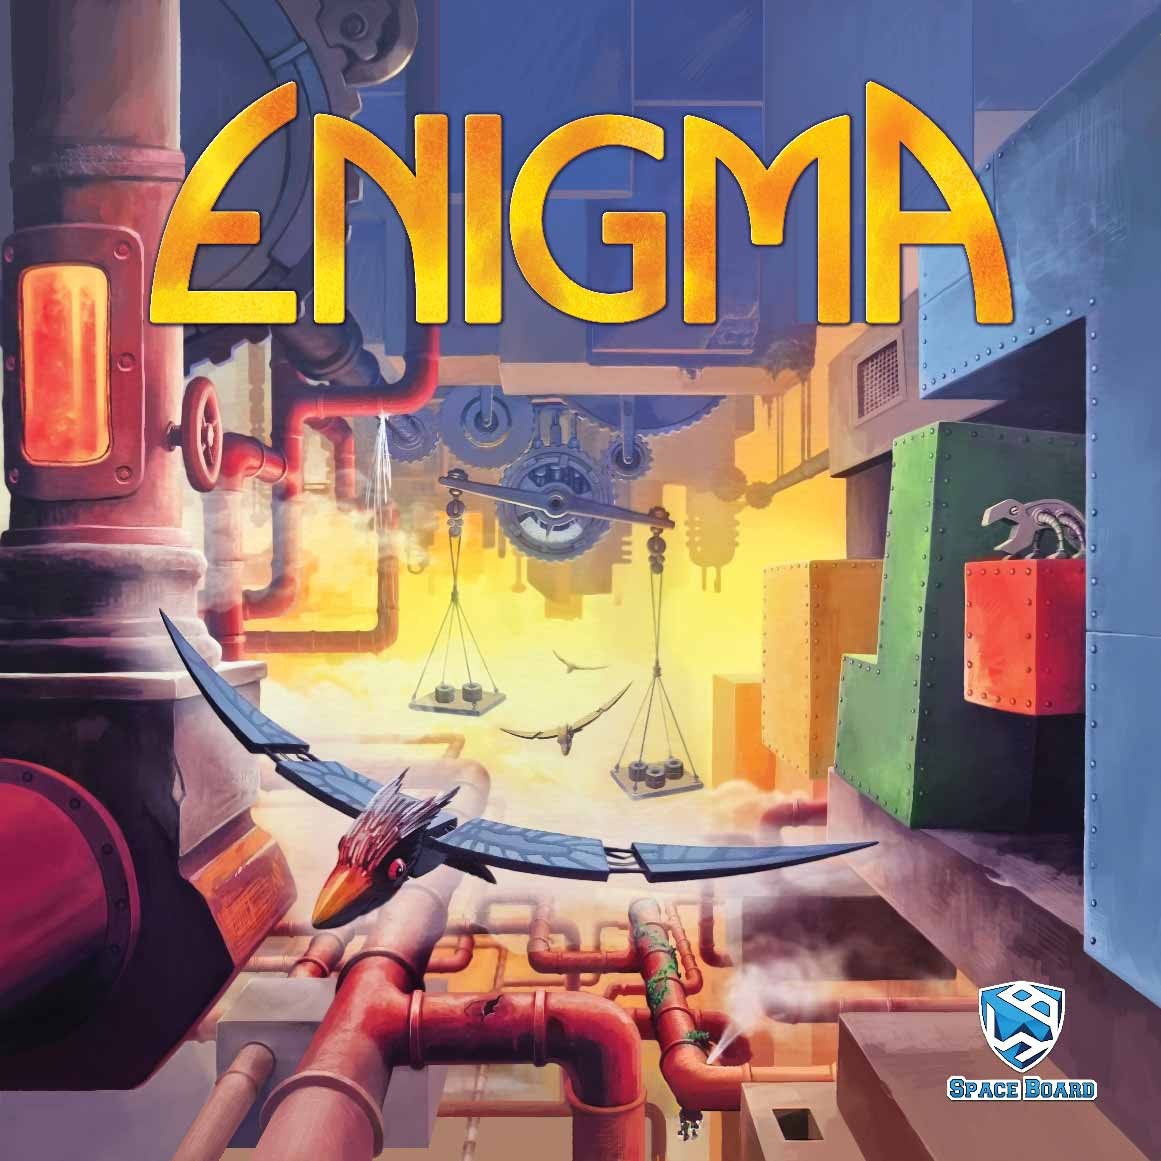 بردگیم انیگما (Enigma)